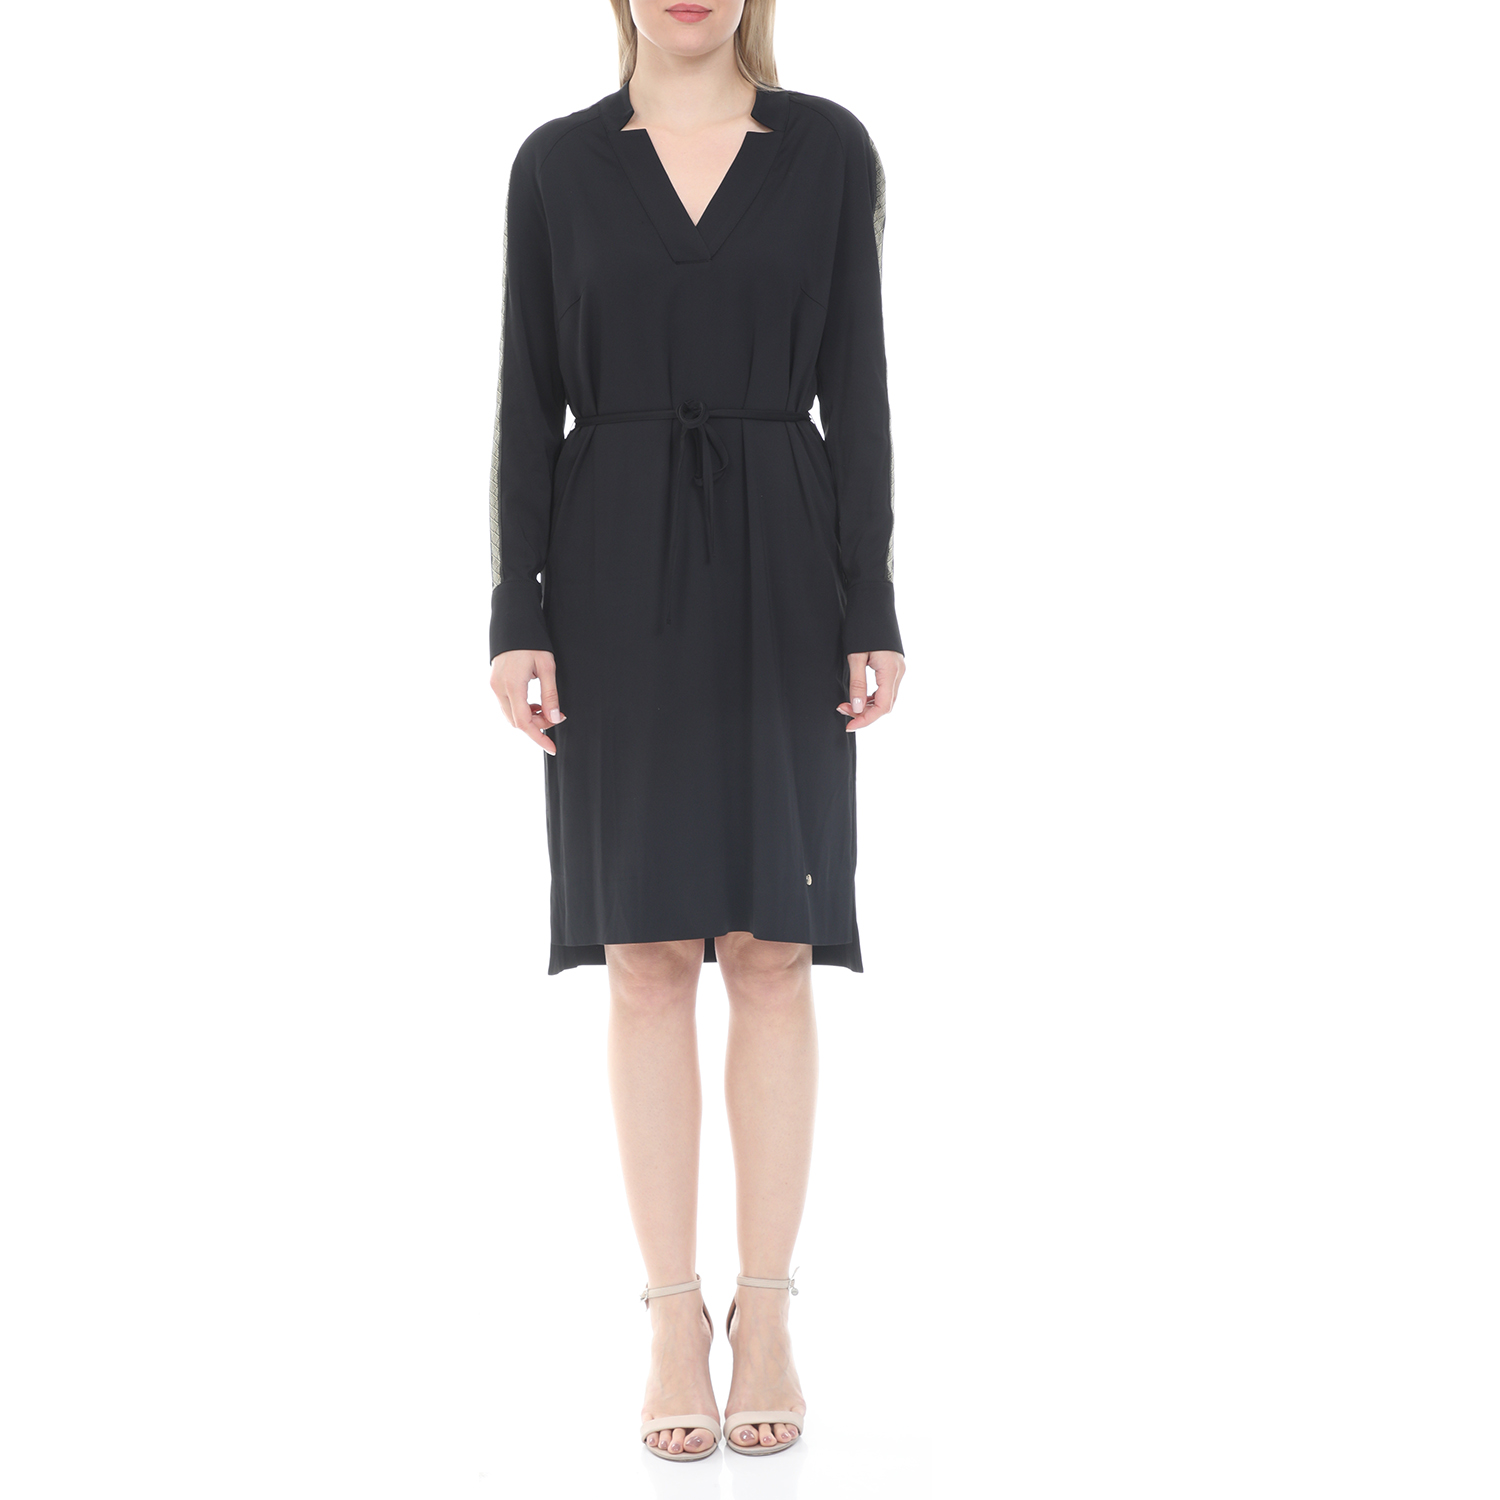 Γυναικεία/Ρούχα/Φορέματα/Μίνι MOS MOSH - Γυναικείο mini φόρεμα MOS MOSH Lipa μαύρο ασημί